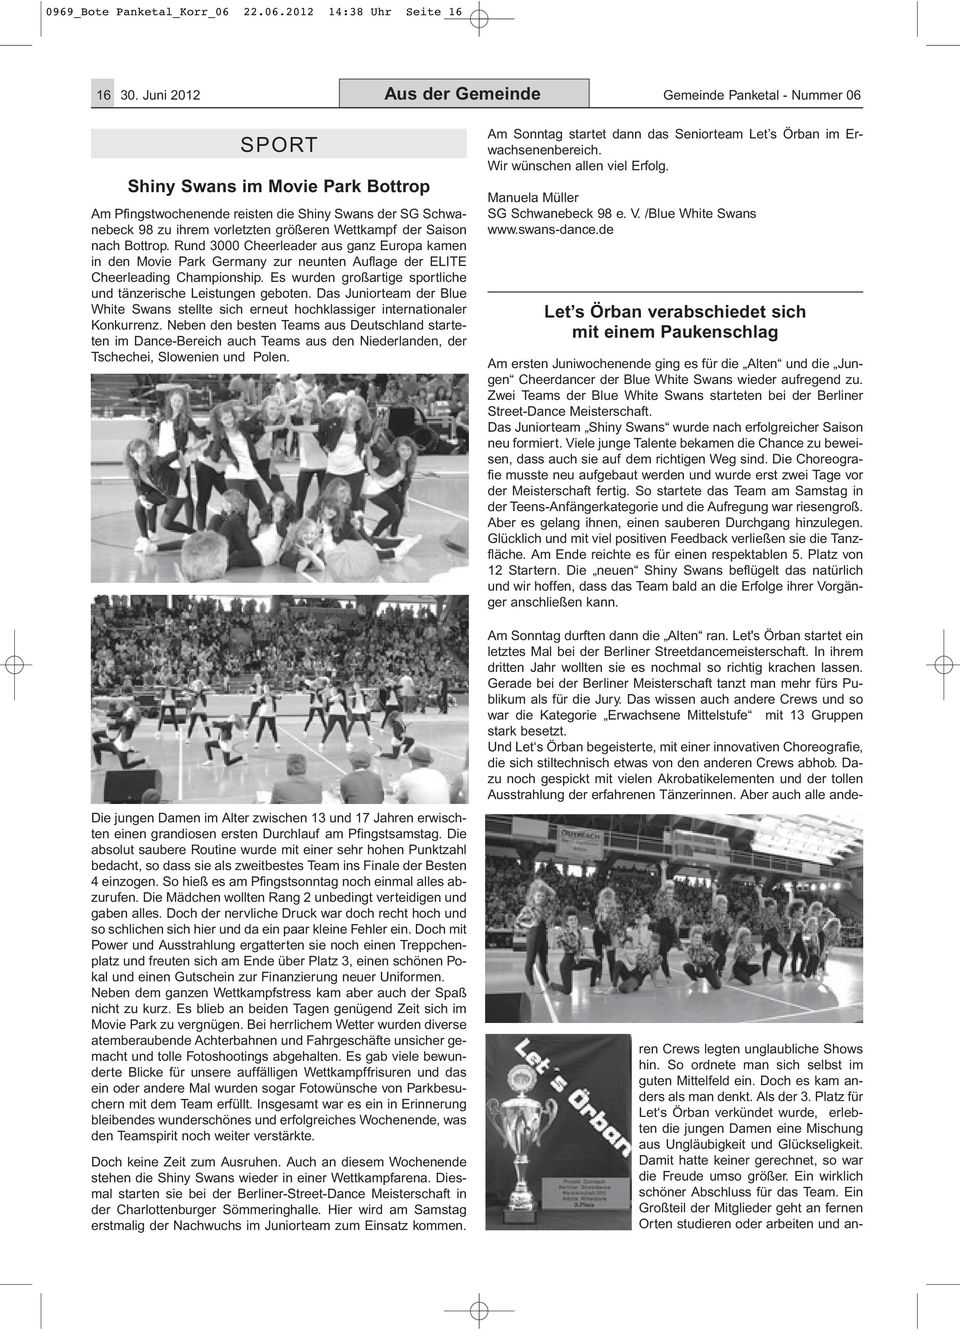 Wettkampf der Saison nach Bottrop. Rund 3000 Cheerleader aus ganz Europa kamen in den Movie Park Germany zur neunten Auflage der ELITE Cheerleading Championship.